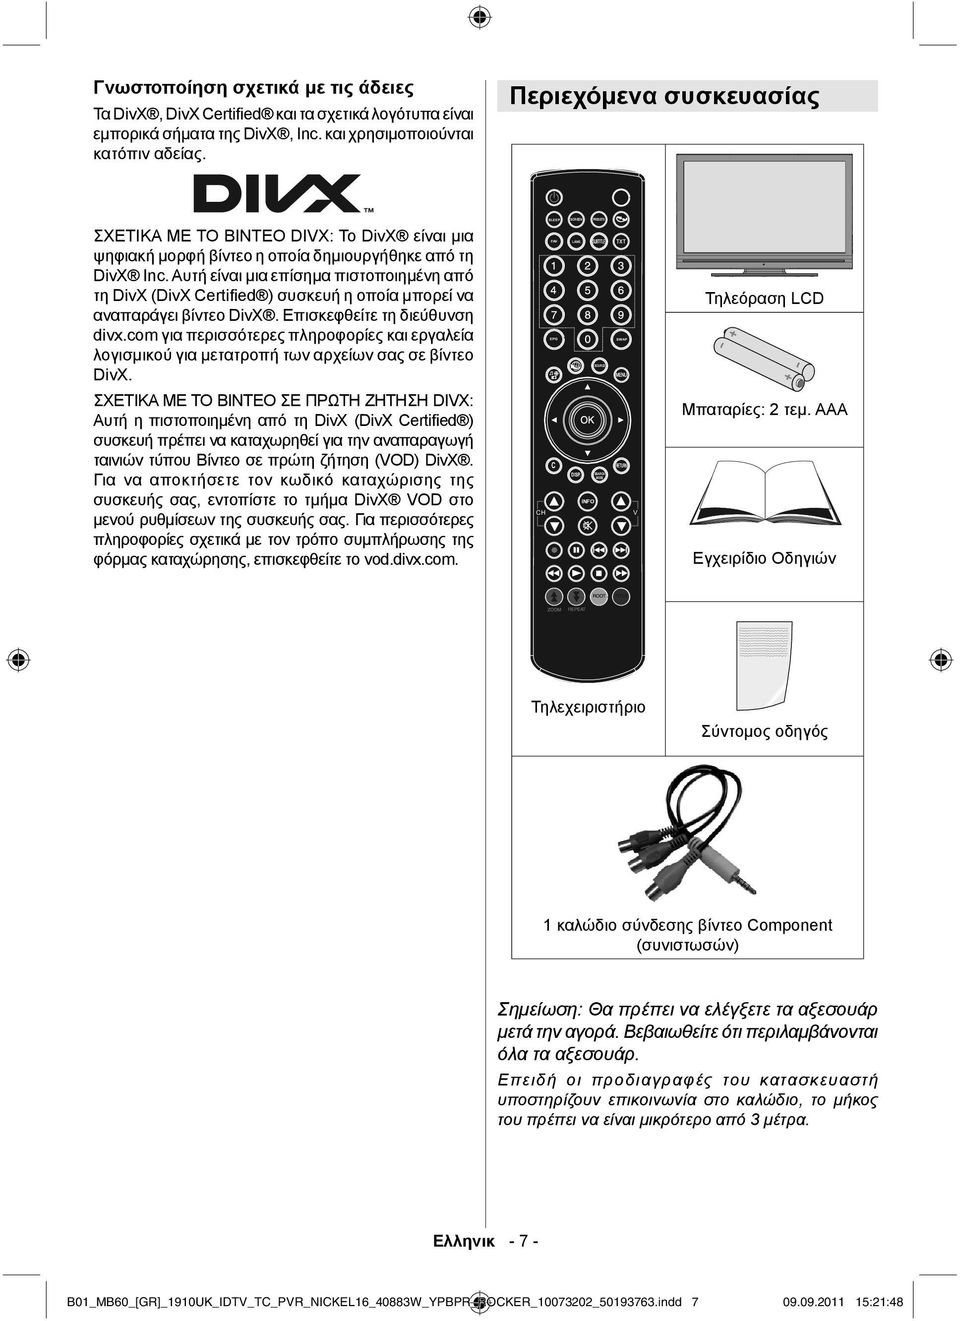 Αυτή είναι μια επίσημα πιστοποιημένη από τη DivX (DivX Certified ) συσκευή η οποία μπορεί να αναπαράγει βίντεο DivX. Επισκεφθείτε τη διεύθυνση divx.